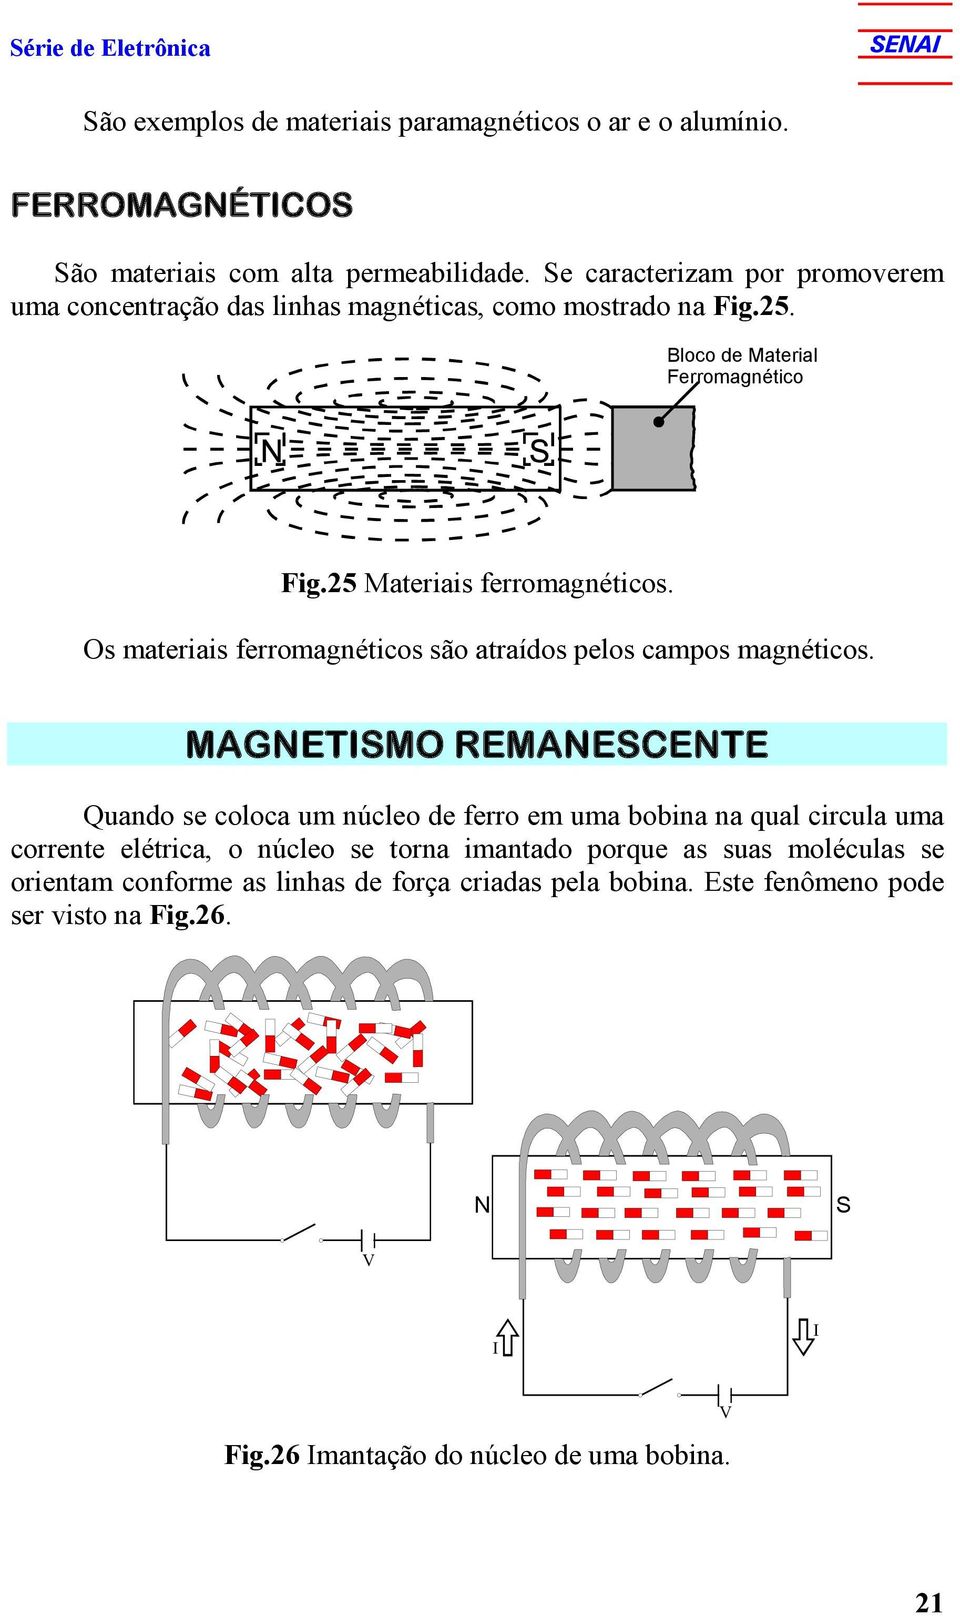 Os materiais ferromagnéticos são atraídos pelos campos magnéticos.